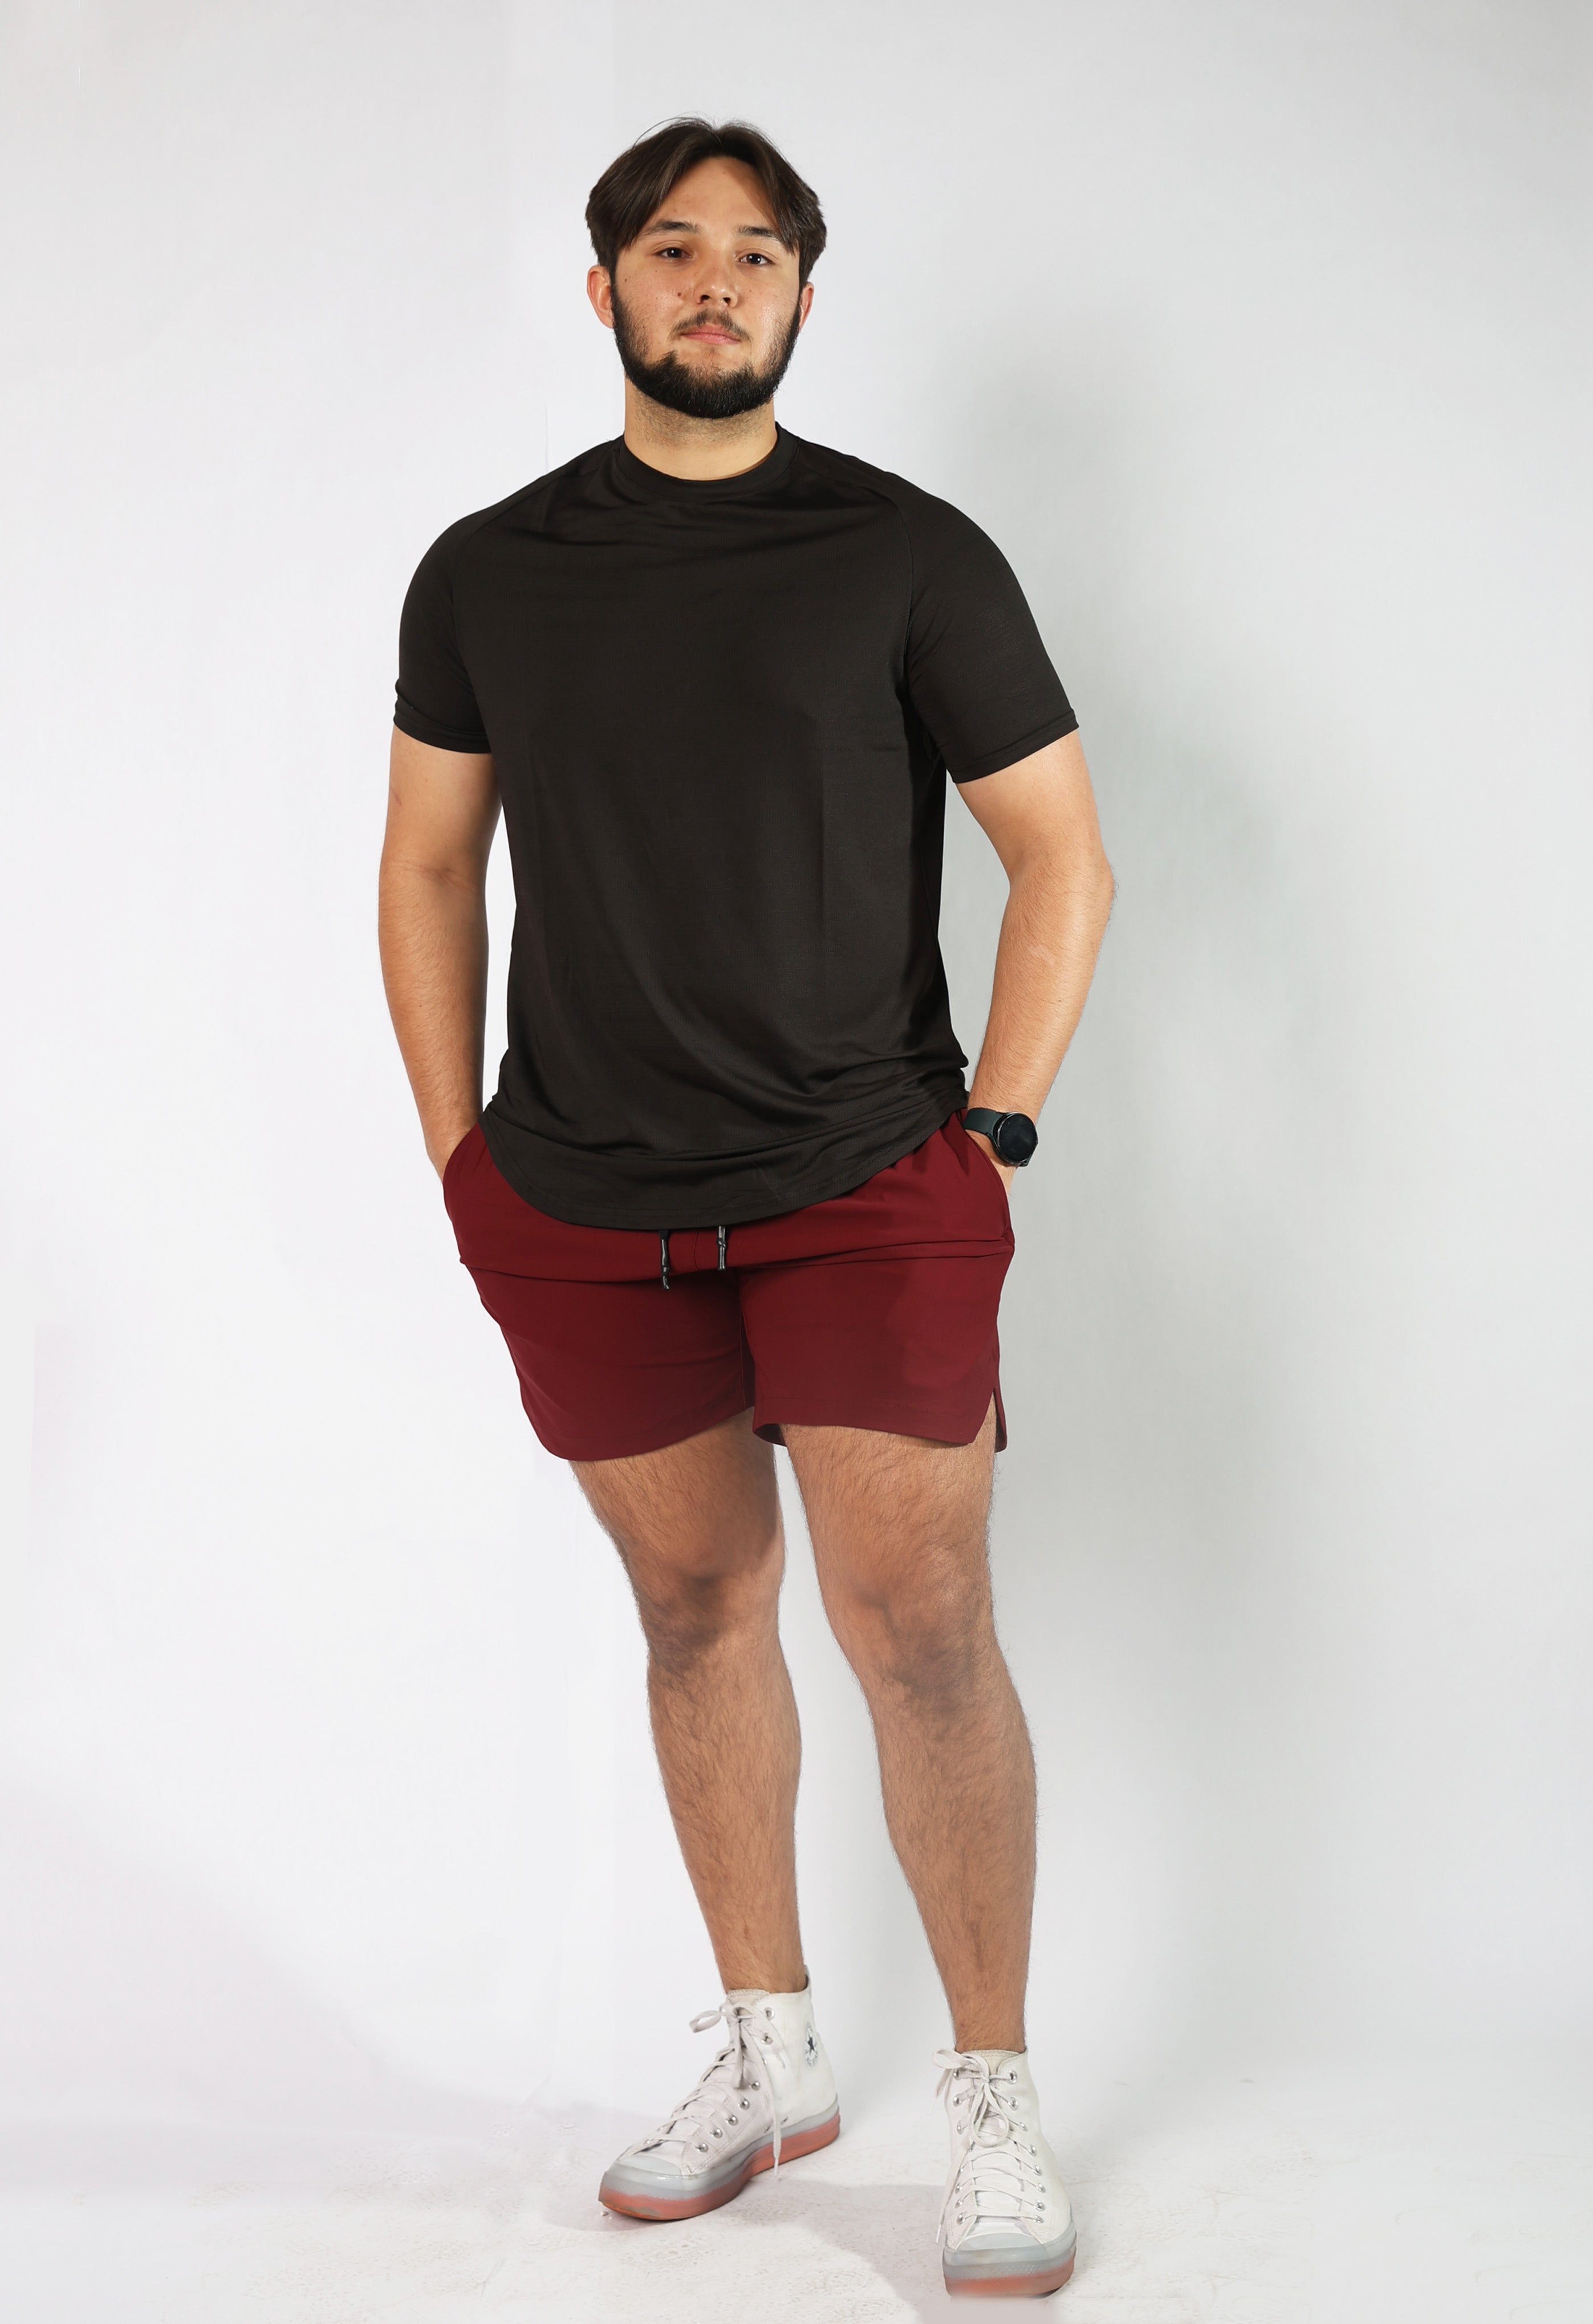 Men's Sprightly Shorts